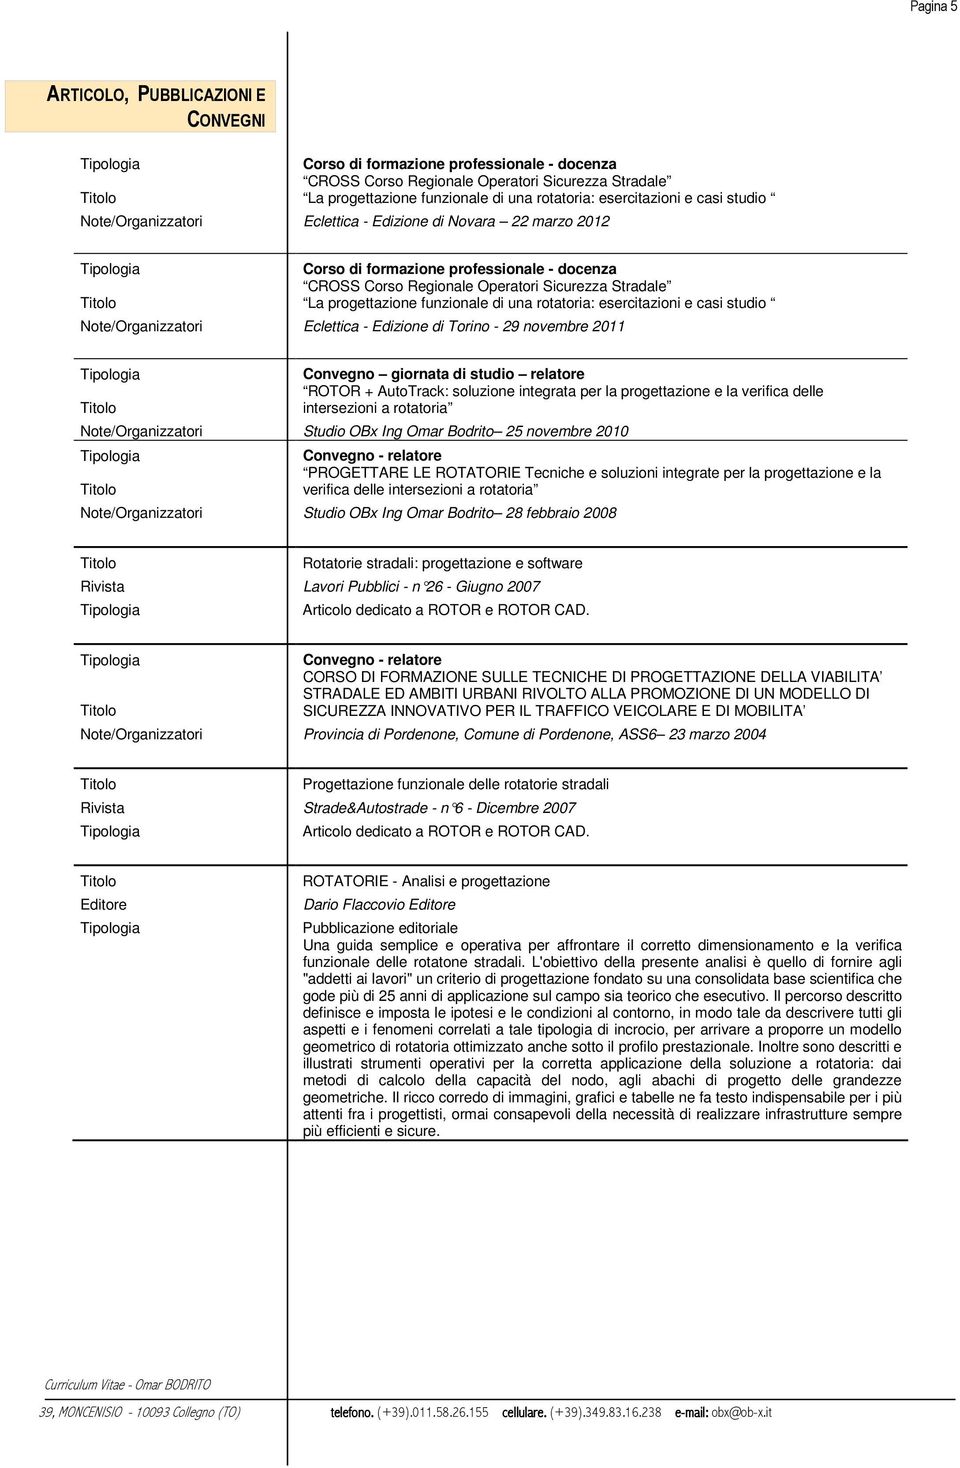 funzionale di una rotatoria: esercitazioni e casi studio Note/Organizzatori Eclettica - Edizione di Torino - 29 novembre 2011 Convegno giornata di studio relatore ROTOR + AutoTrack: soluzione